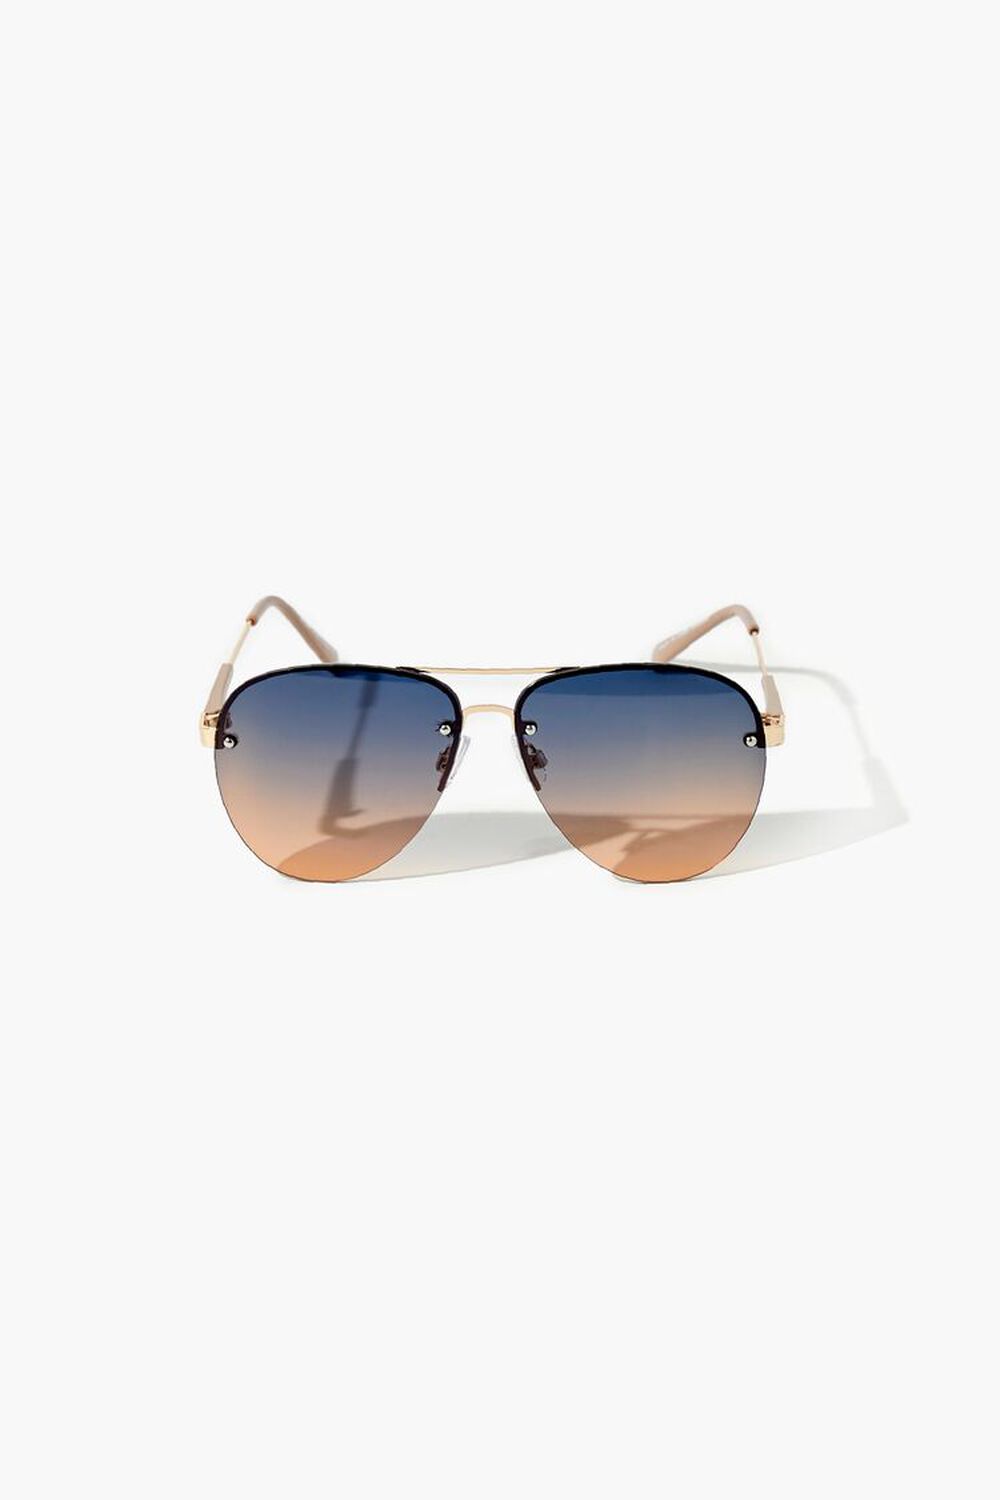 GOLD/MULTI Gradient Aviator Sunglasses, image 1